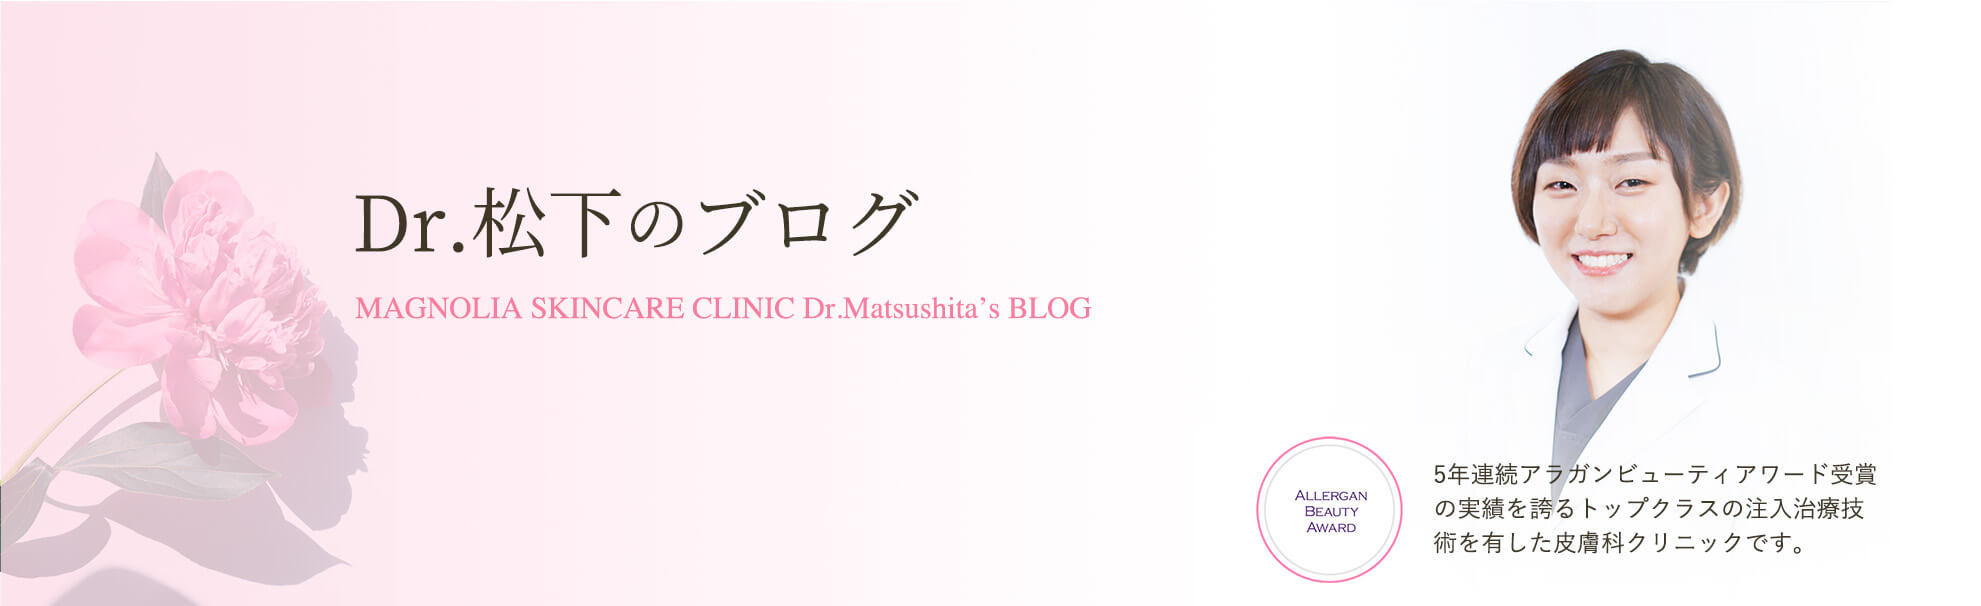 Dr.松下のブログキービジュアル